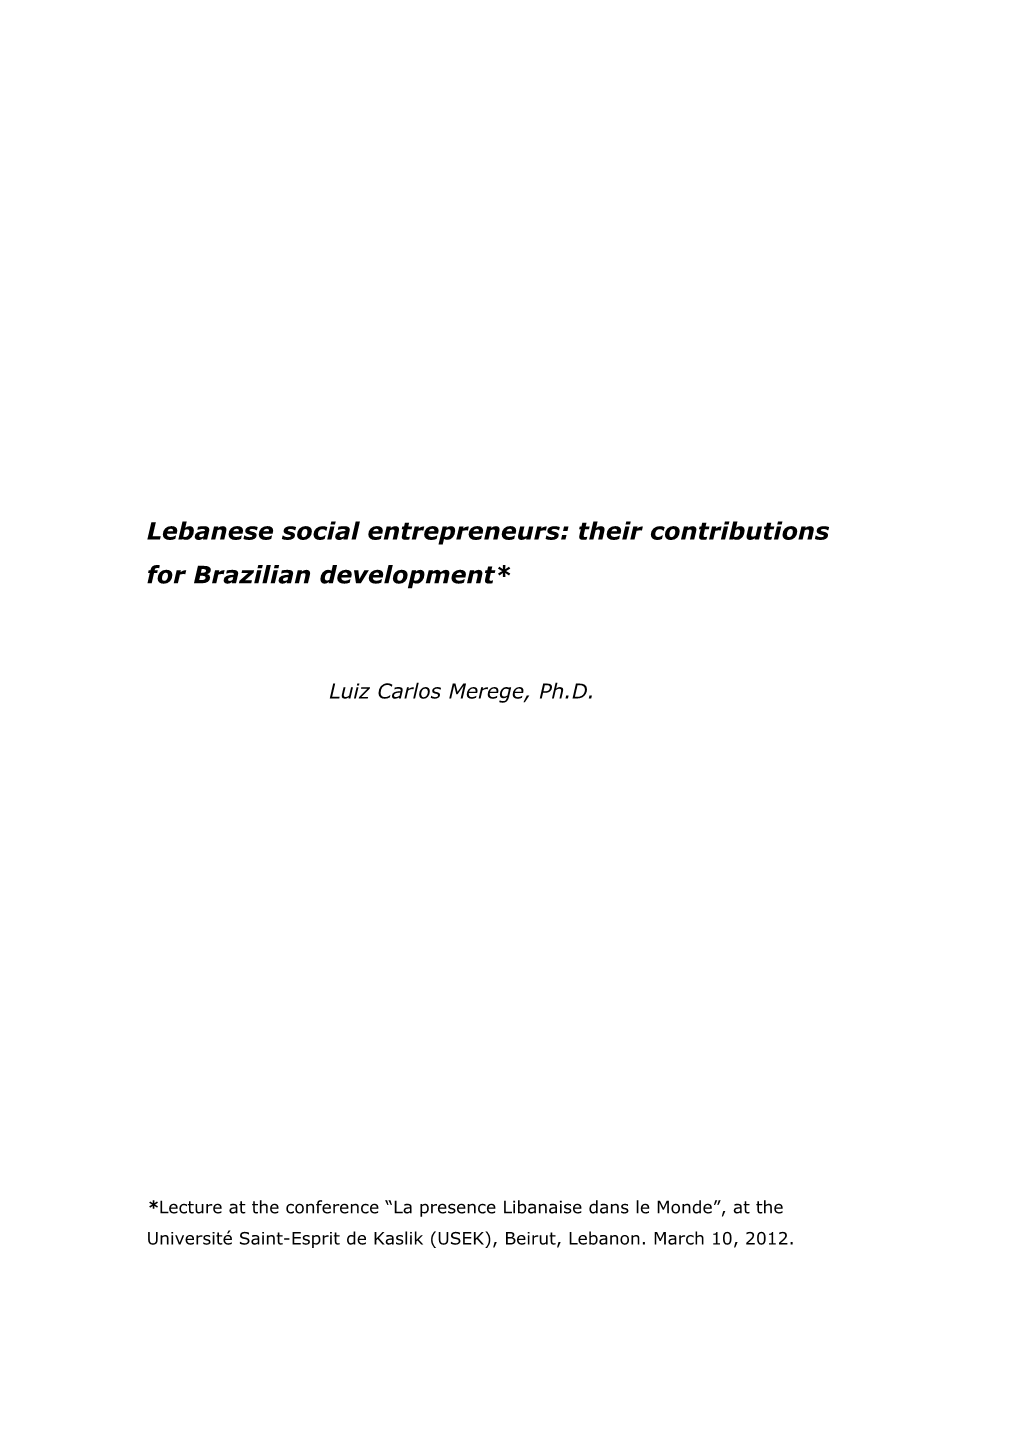 Lebanese Social Entrepreneurs: Their Contributions for Brazilian Development*